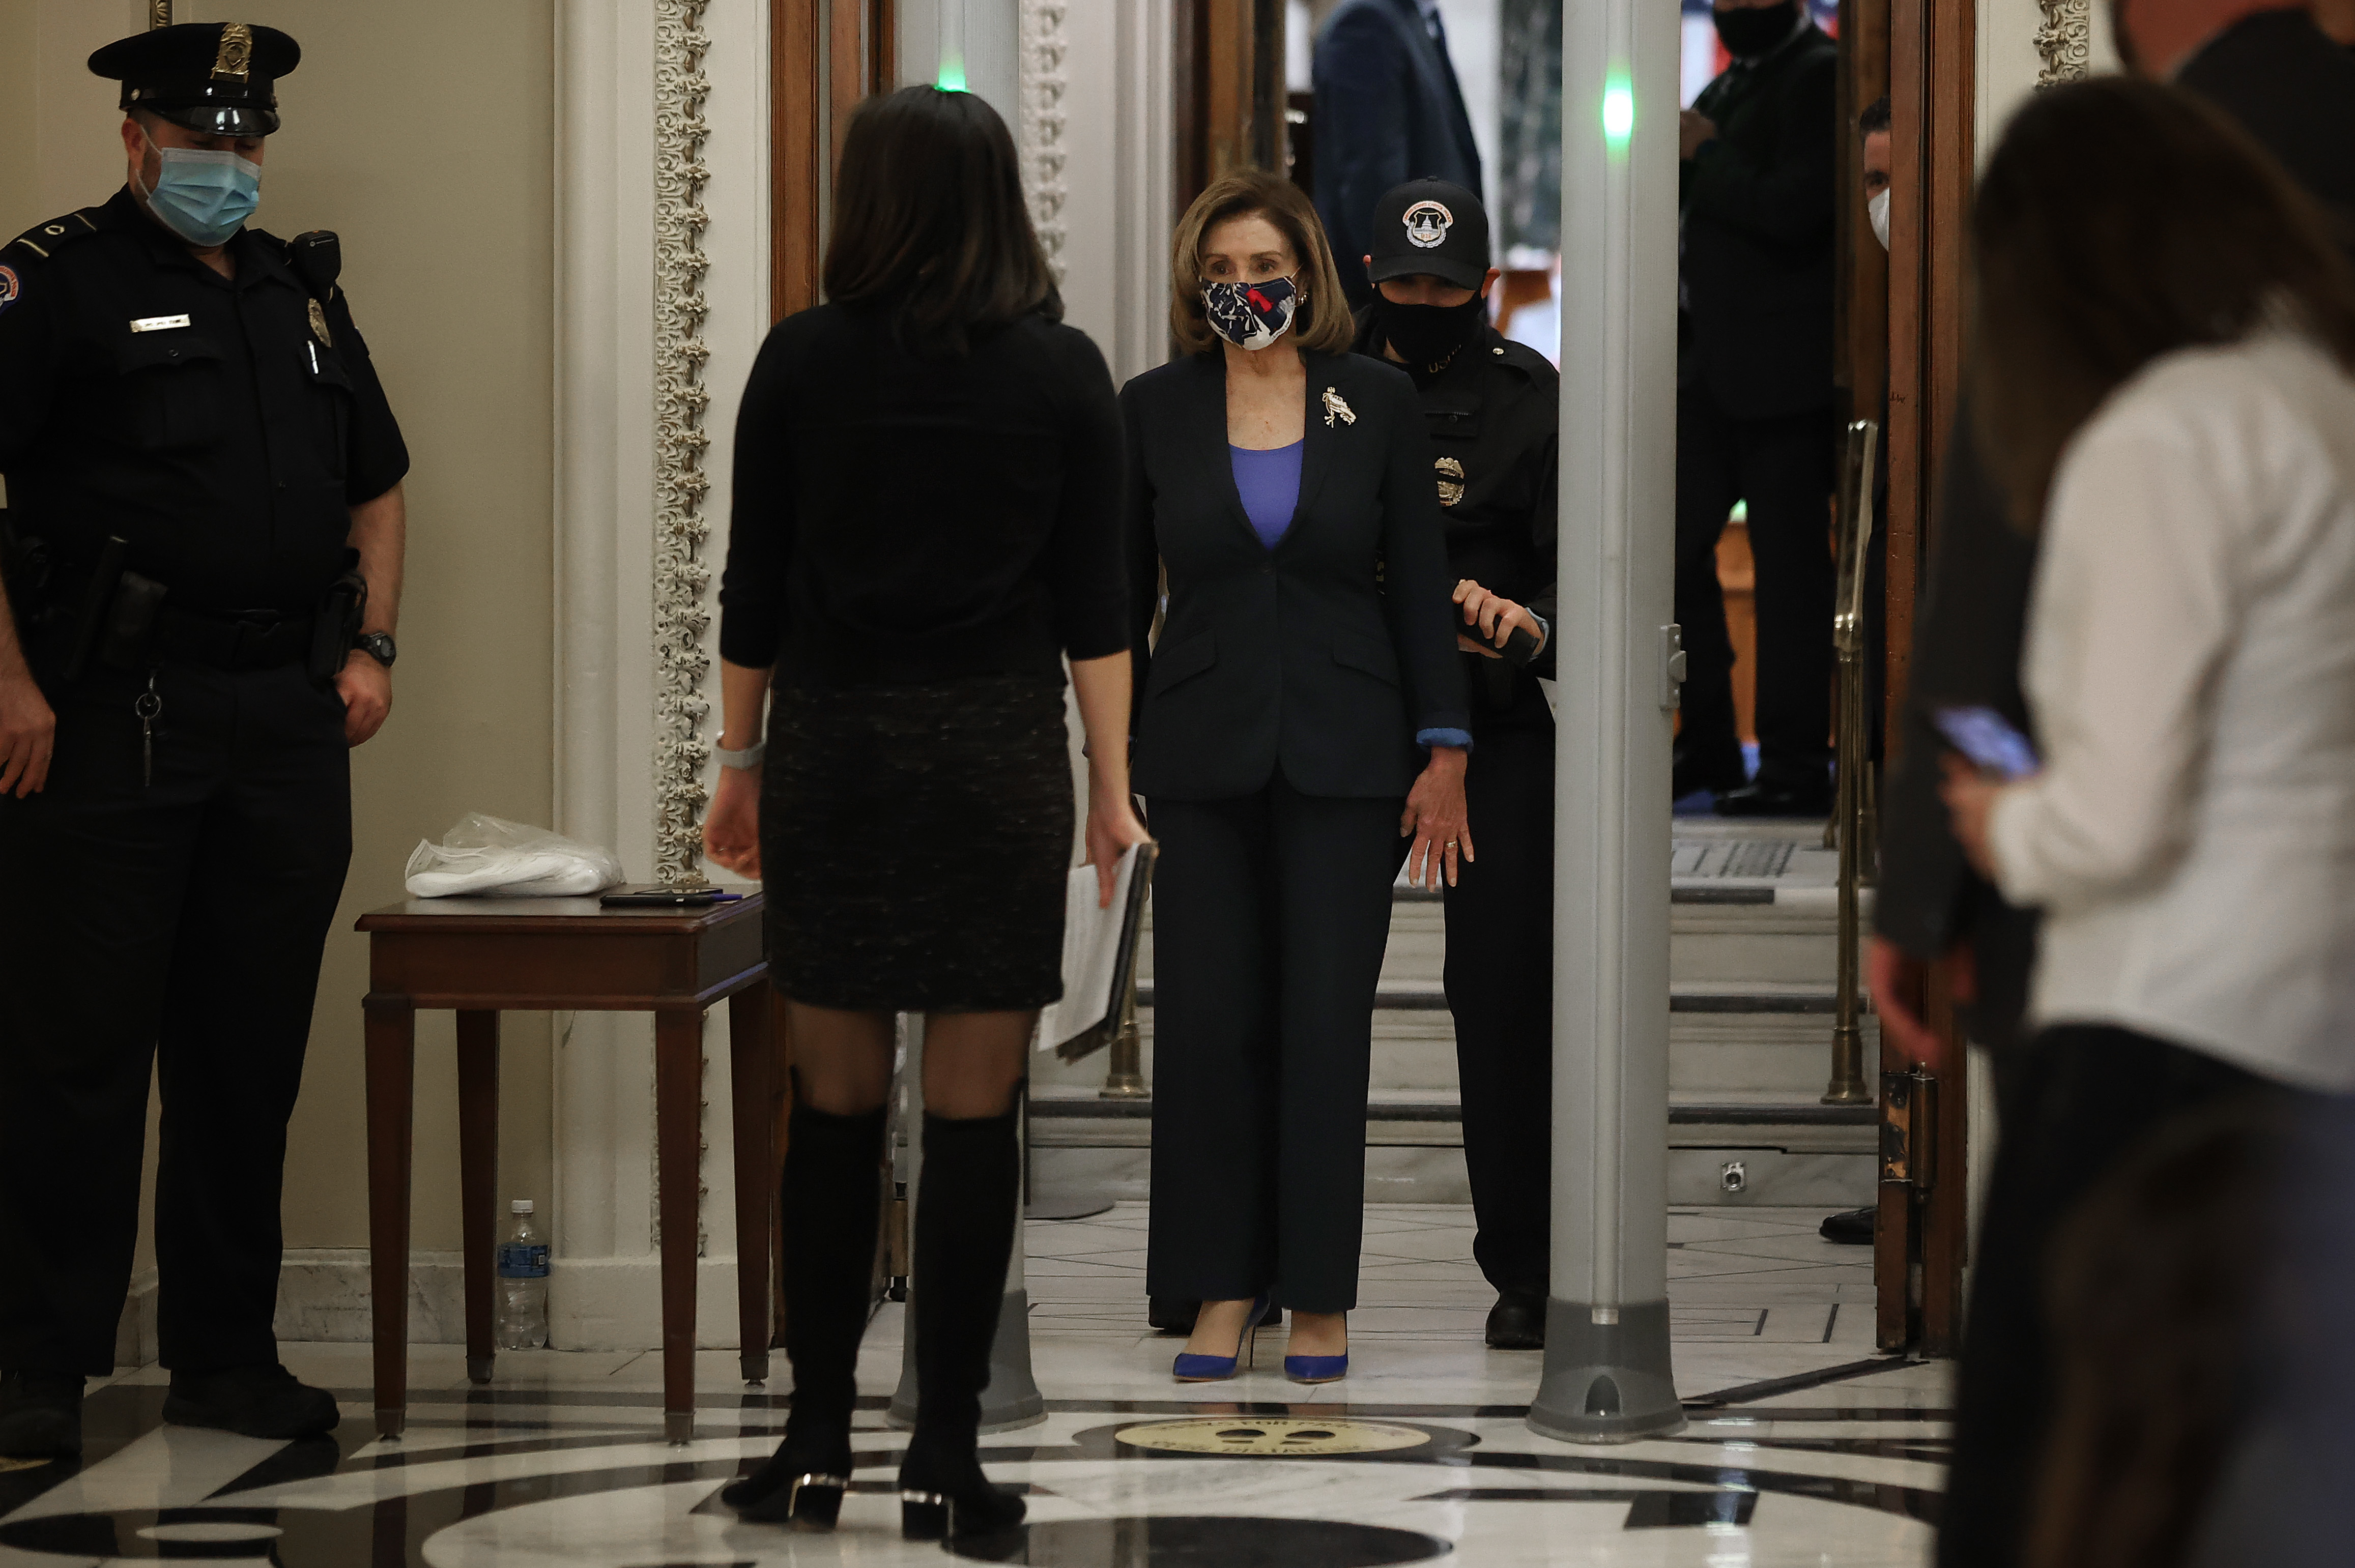 Pelosi goes through Metal Detector at US Capitol